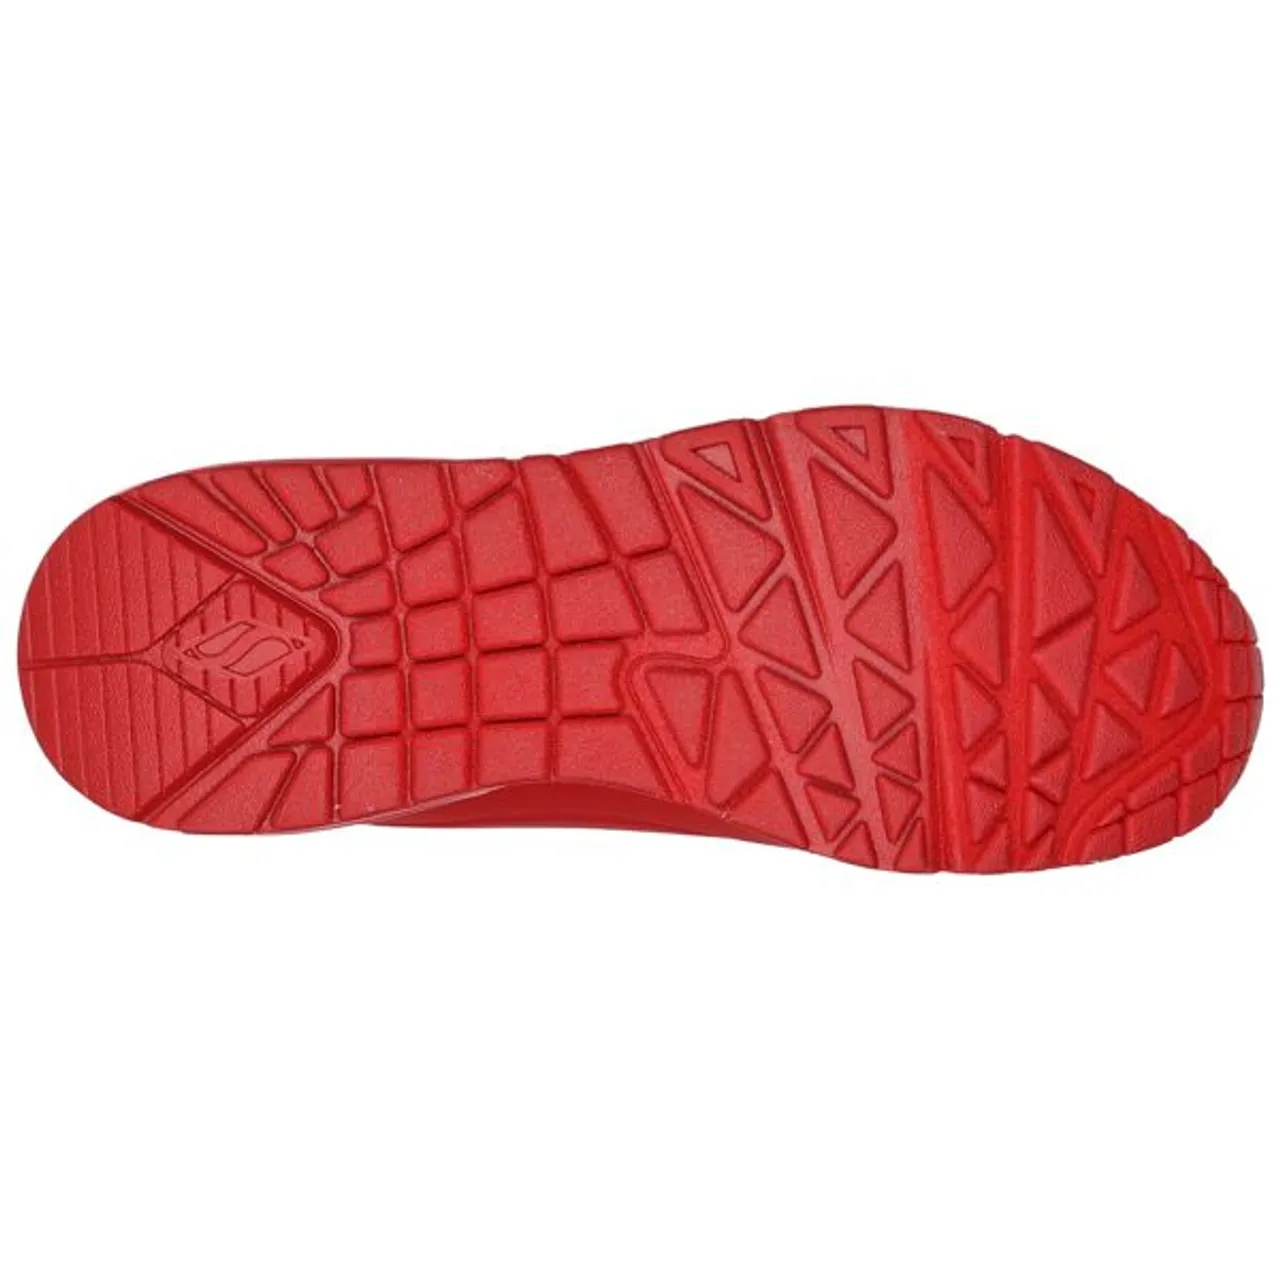 Sneaker SKECHERS "UNO DRIPPING IN LOVE" Gr. 35, rot (rot, pink) Damen Schuhe Modernsneaker Sneaker low